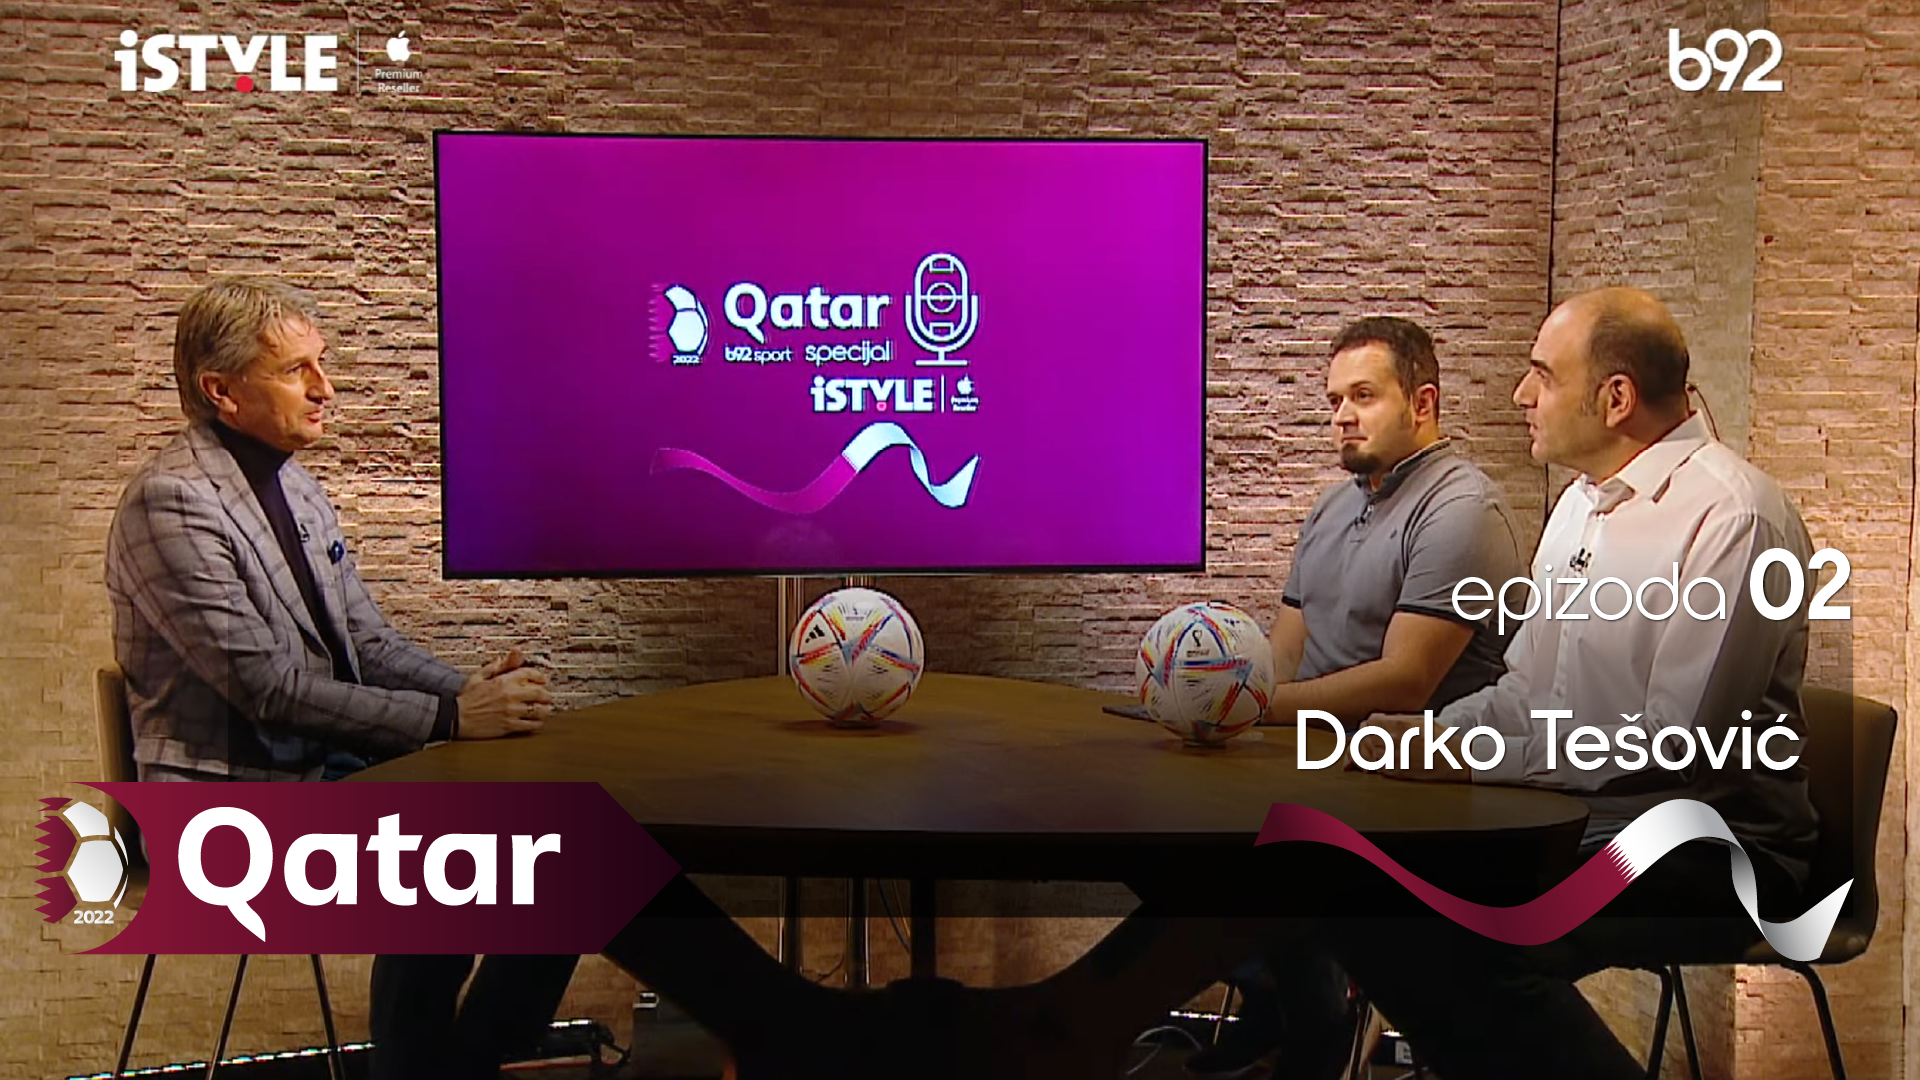 Qatar special 2: Darko Tešović